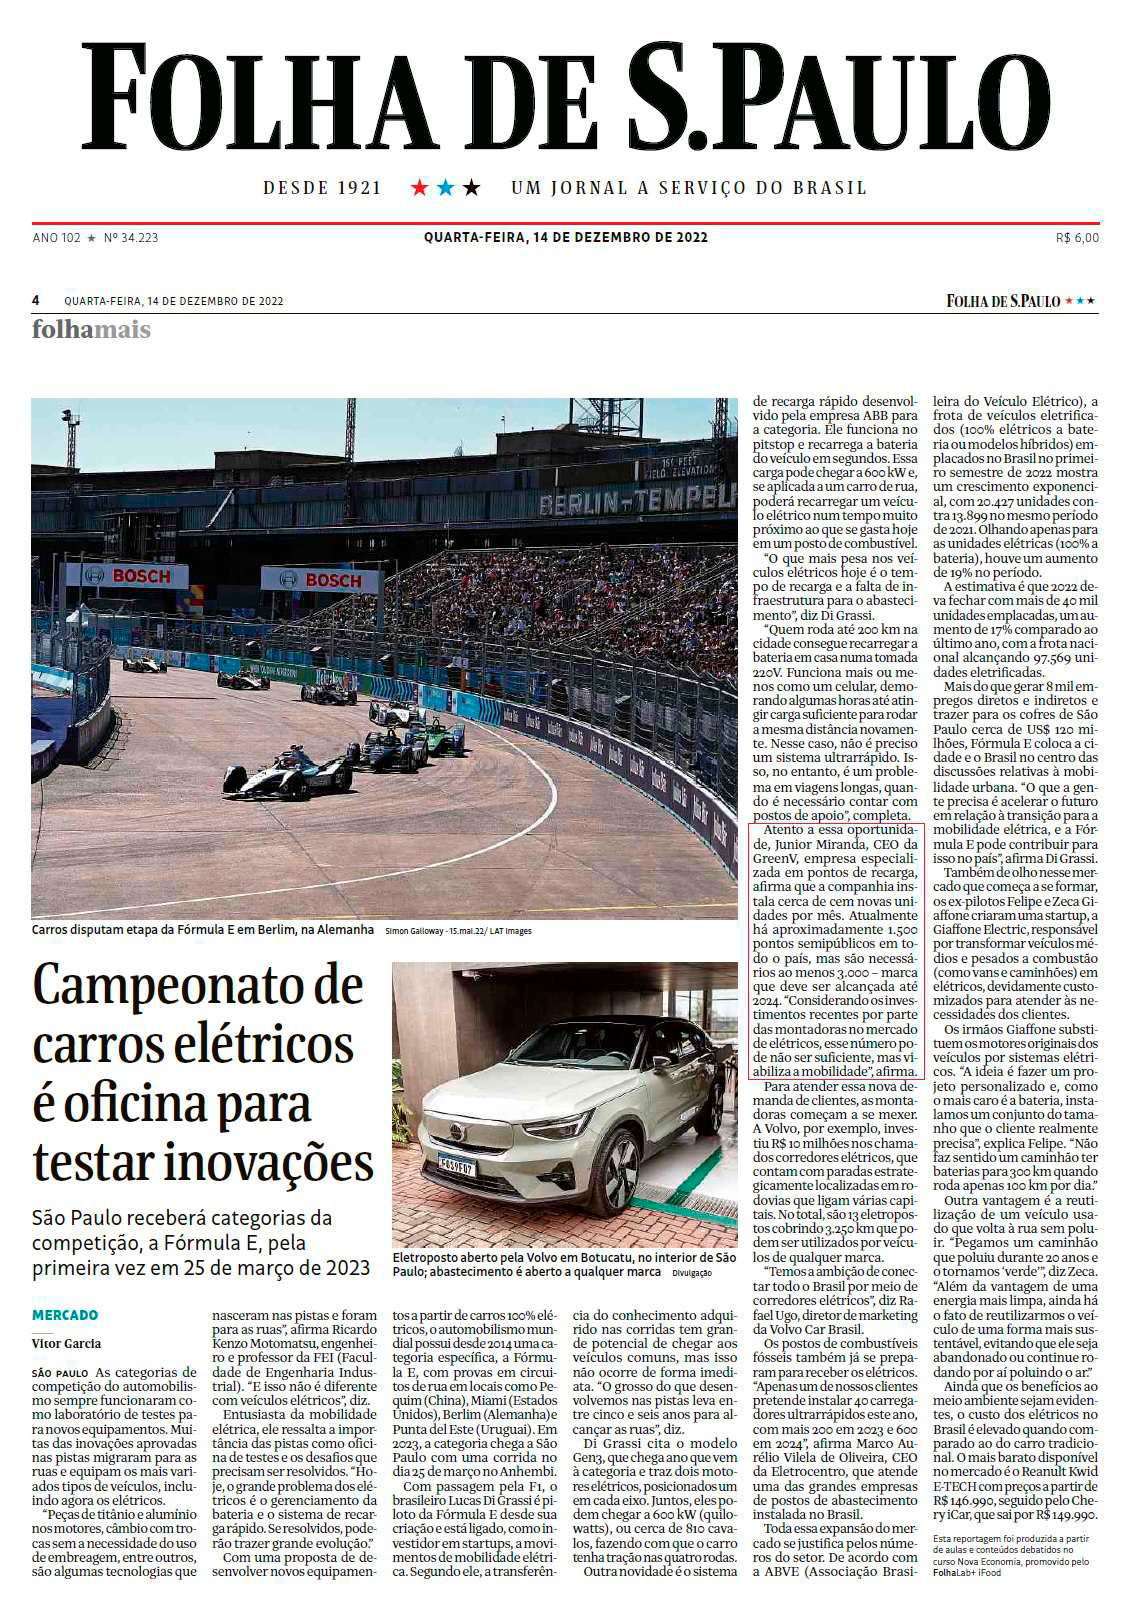 Mobilidade Elétrica: matéria publicada no jornal Folha de São Paulo